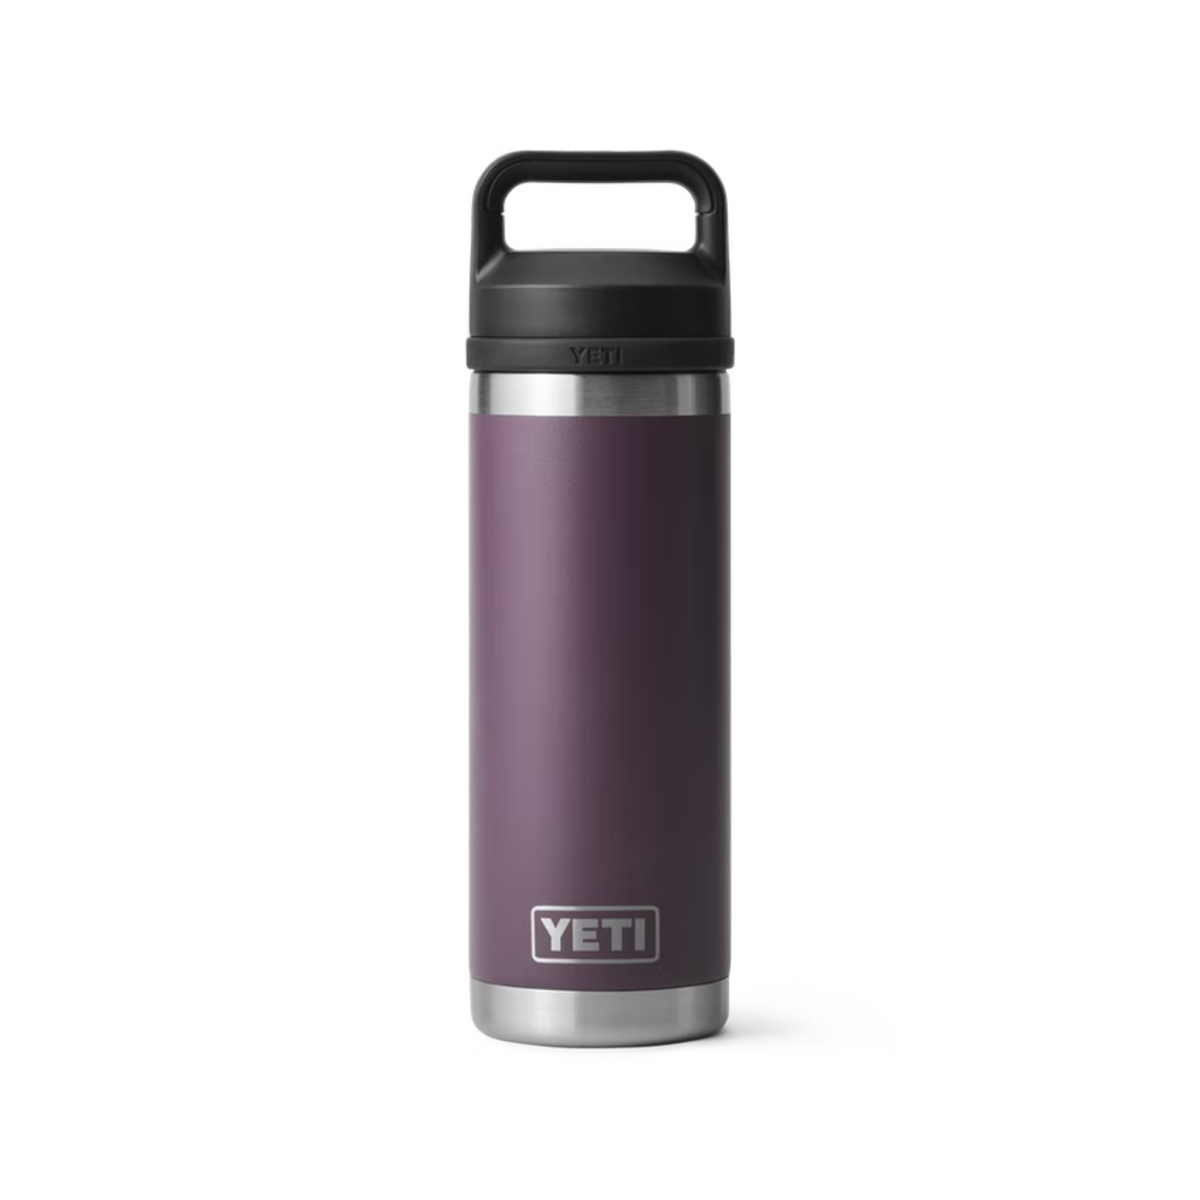 Yeti 18oz Bottle with Chug Cap is Nordic Purple